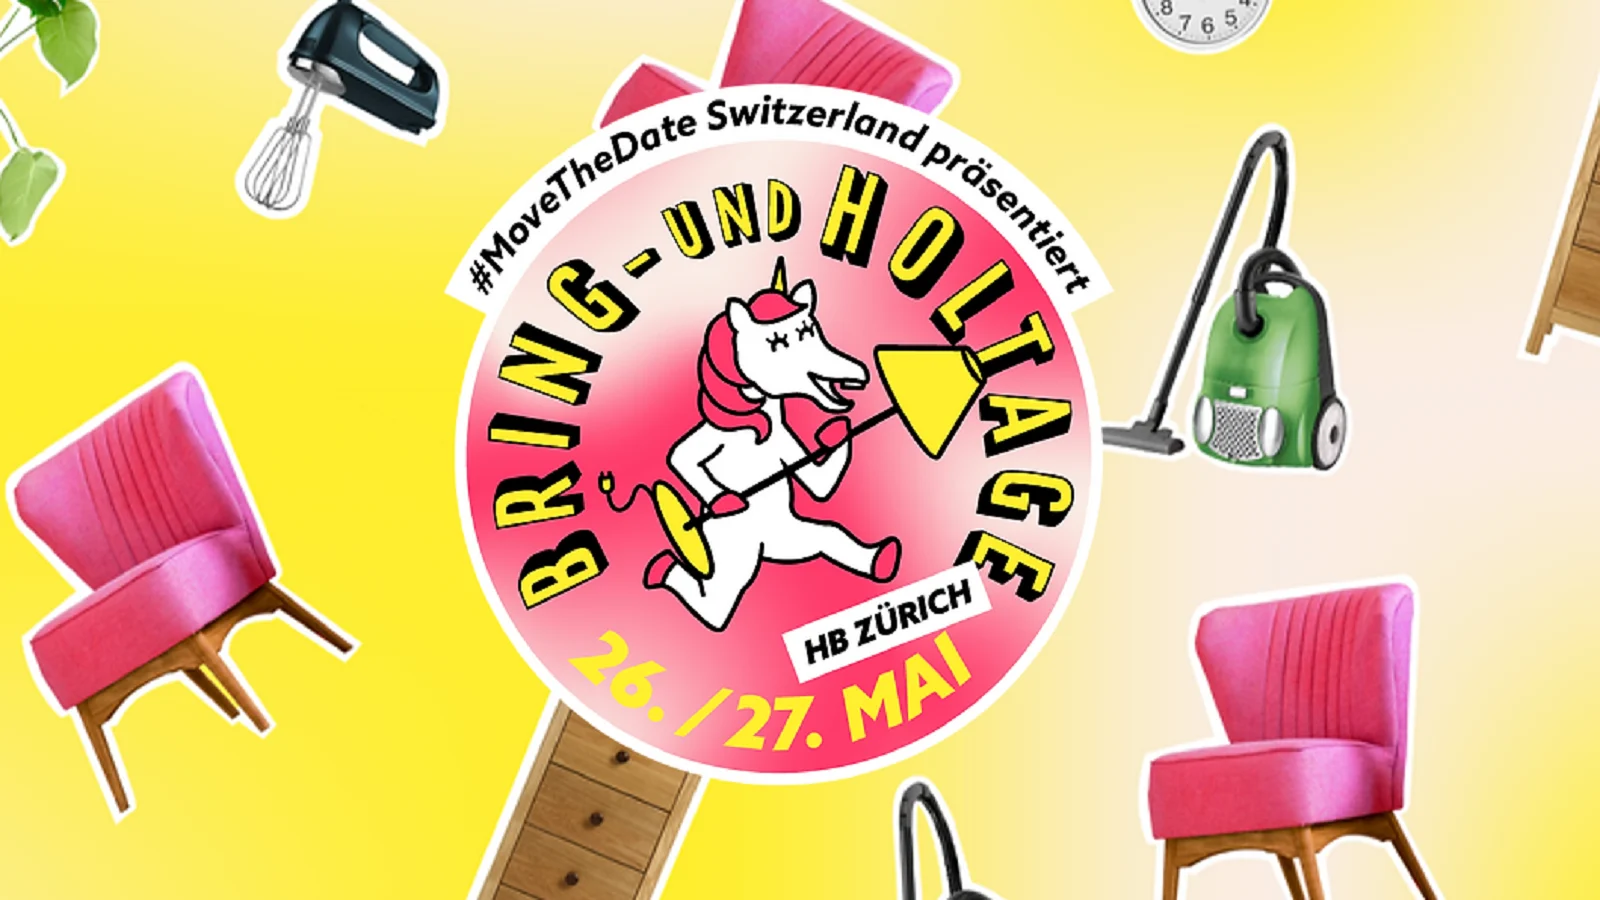 #MoveTheDate Switzerland präsentiert die Bring- und Holtage im HB Zürich